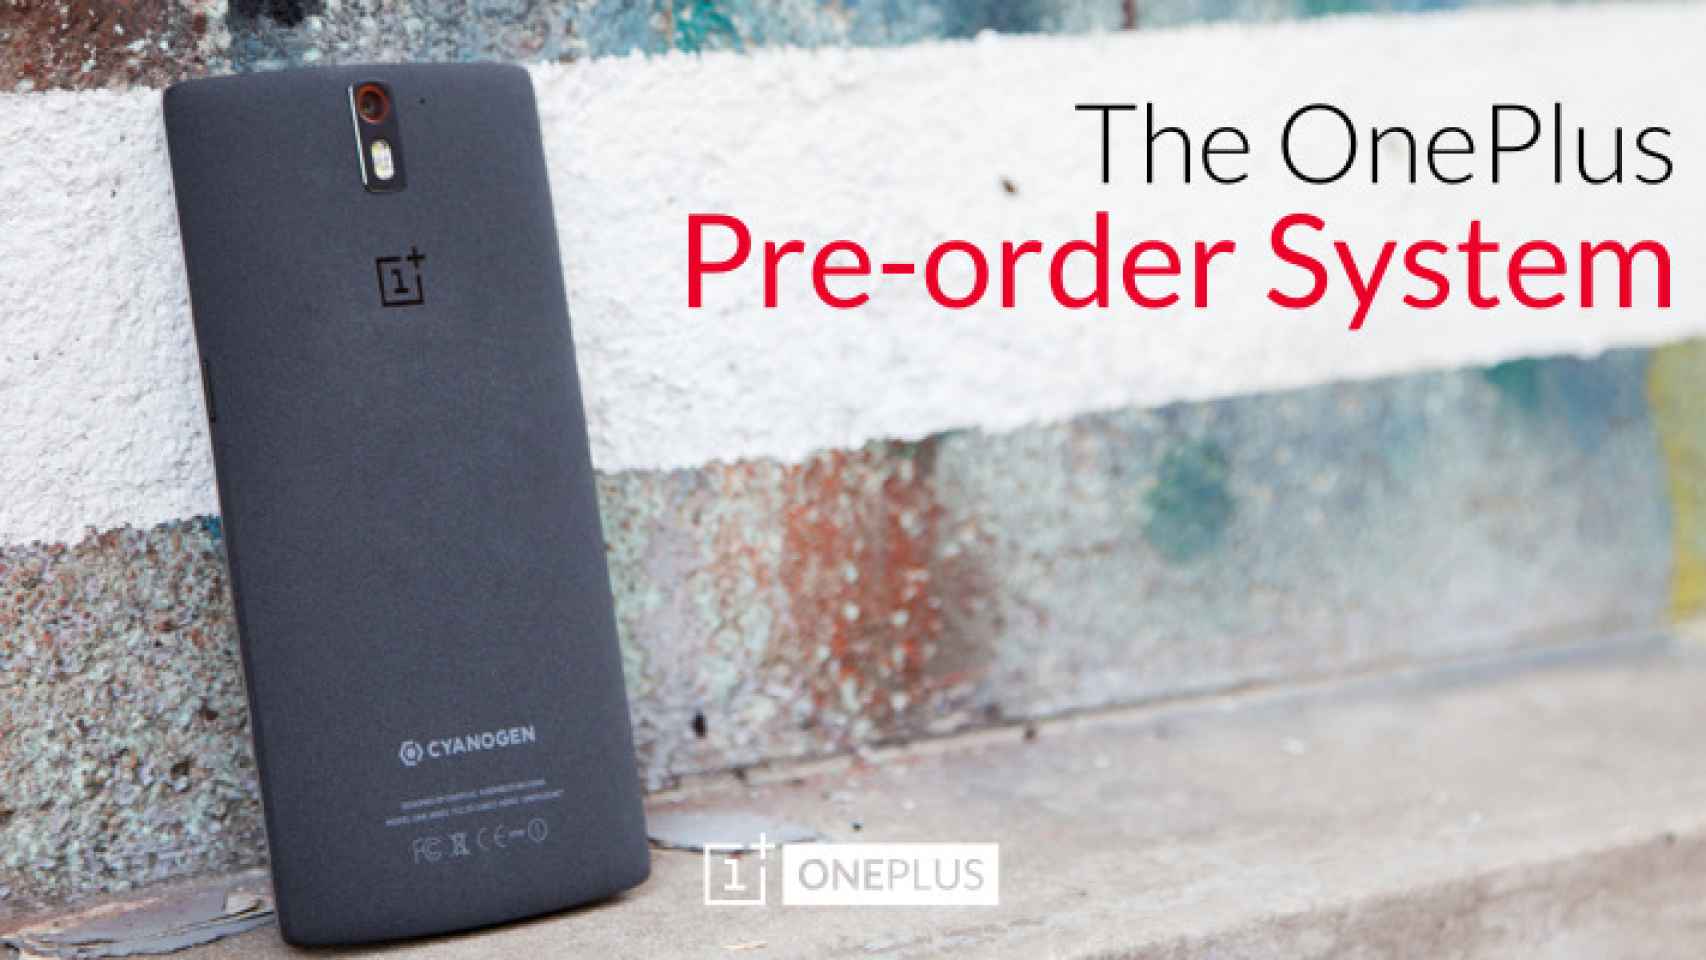 OnePlus One estará disponible para reservar sin invitaciones el 27 de Octubre